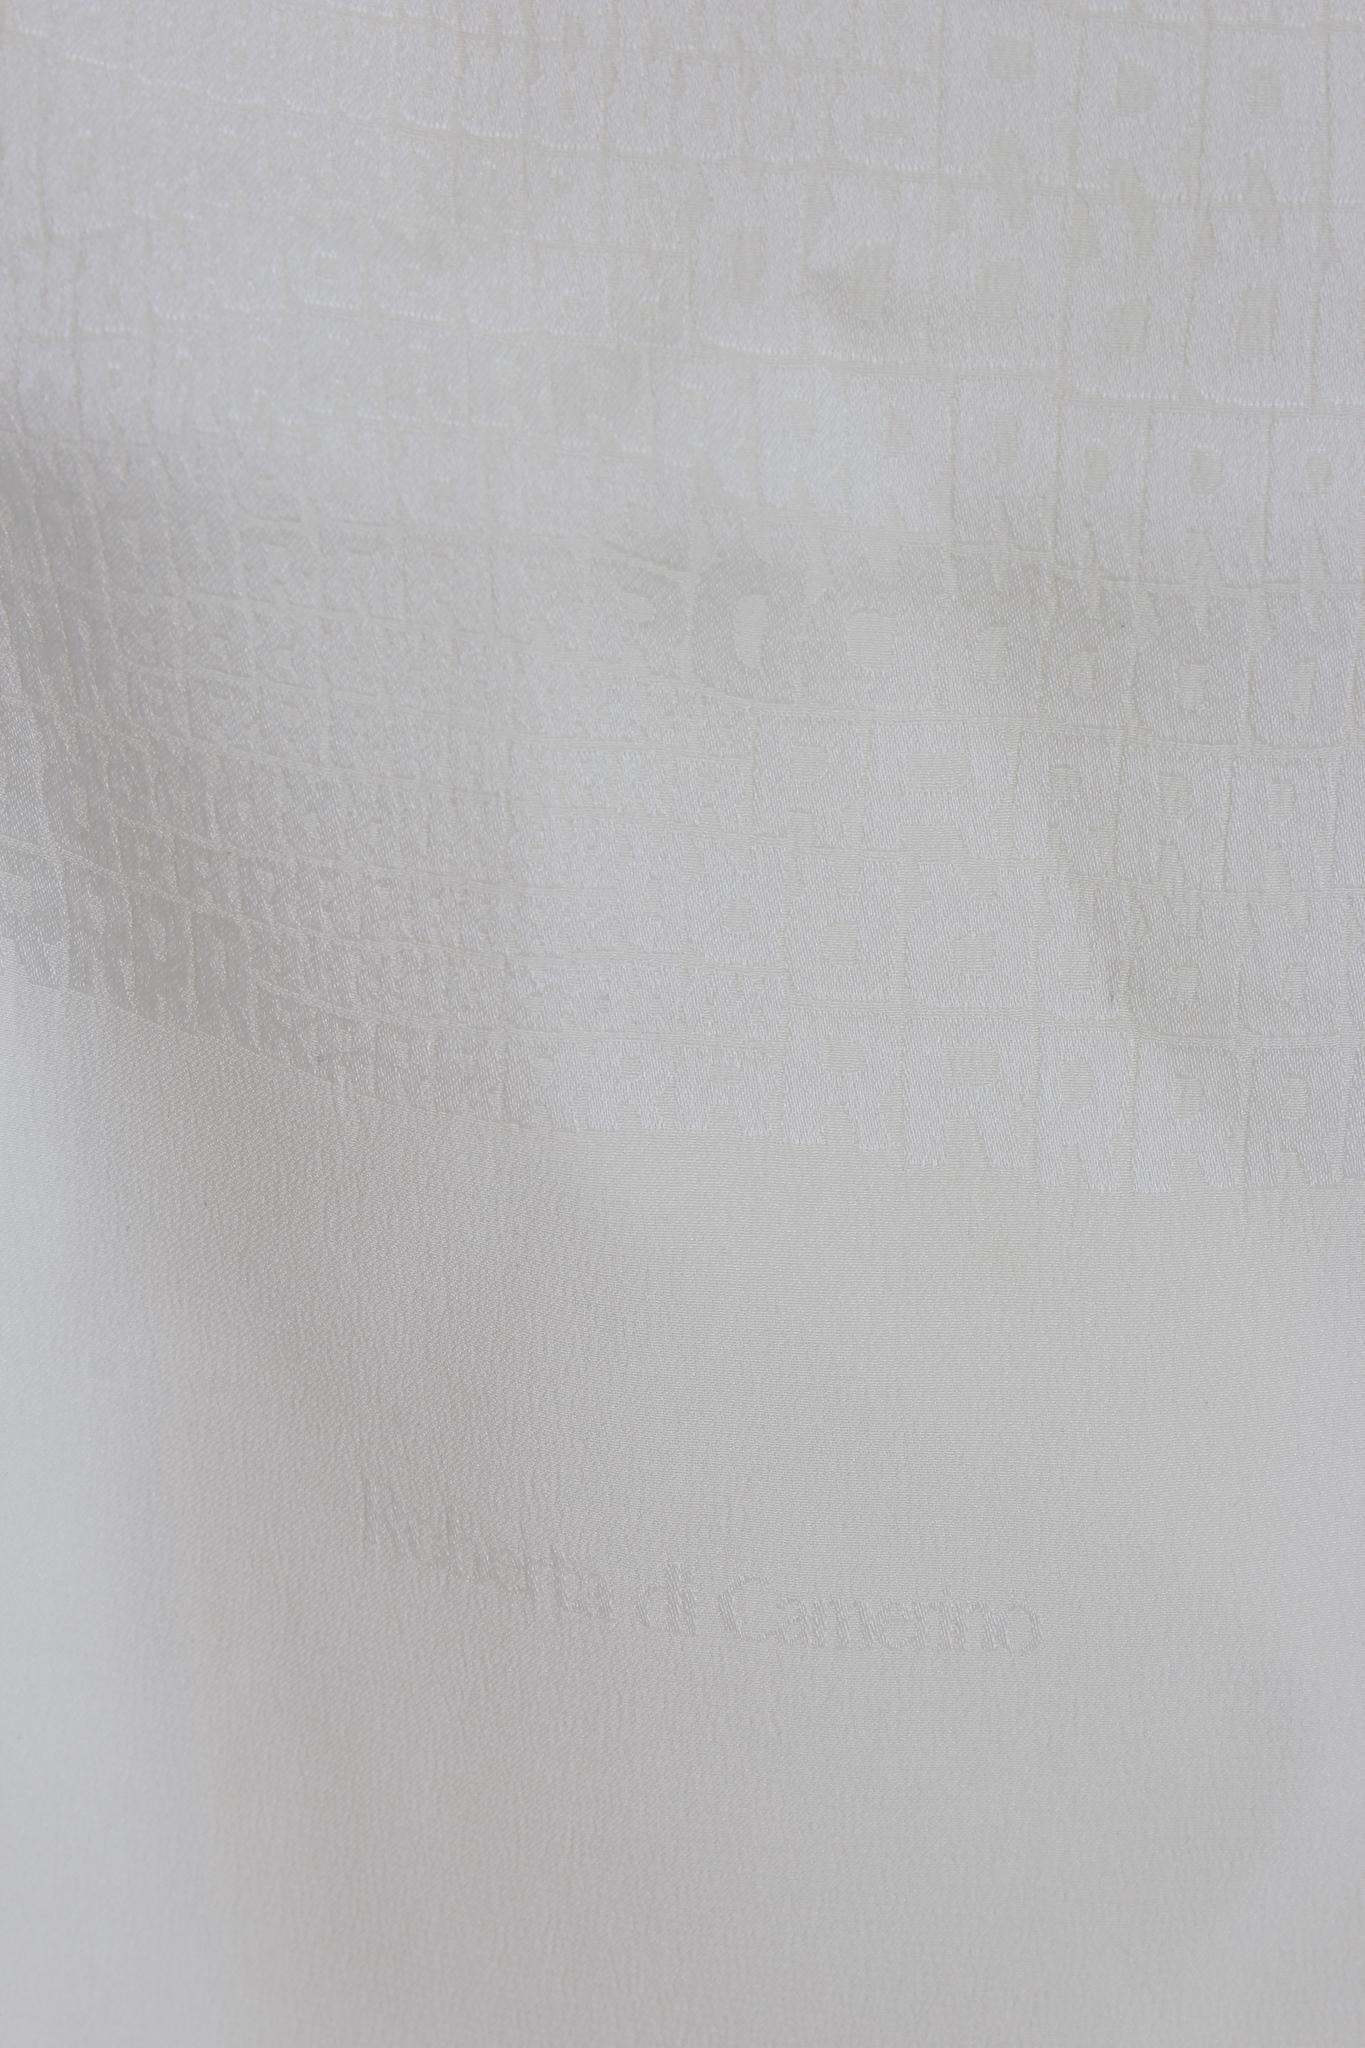 Roberta di Camerino 90s vintage Schlauchschal. Ton-in-Ton-Monogramm-Muster in Beige, 100% Seide. Hergestellt in Italien.

Maße: 37 x 170 cm